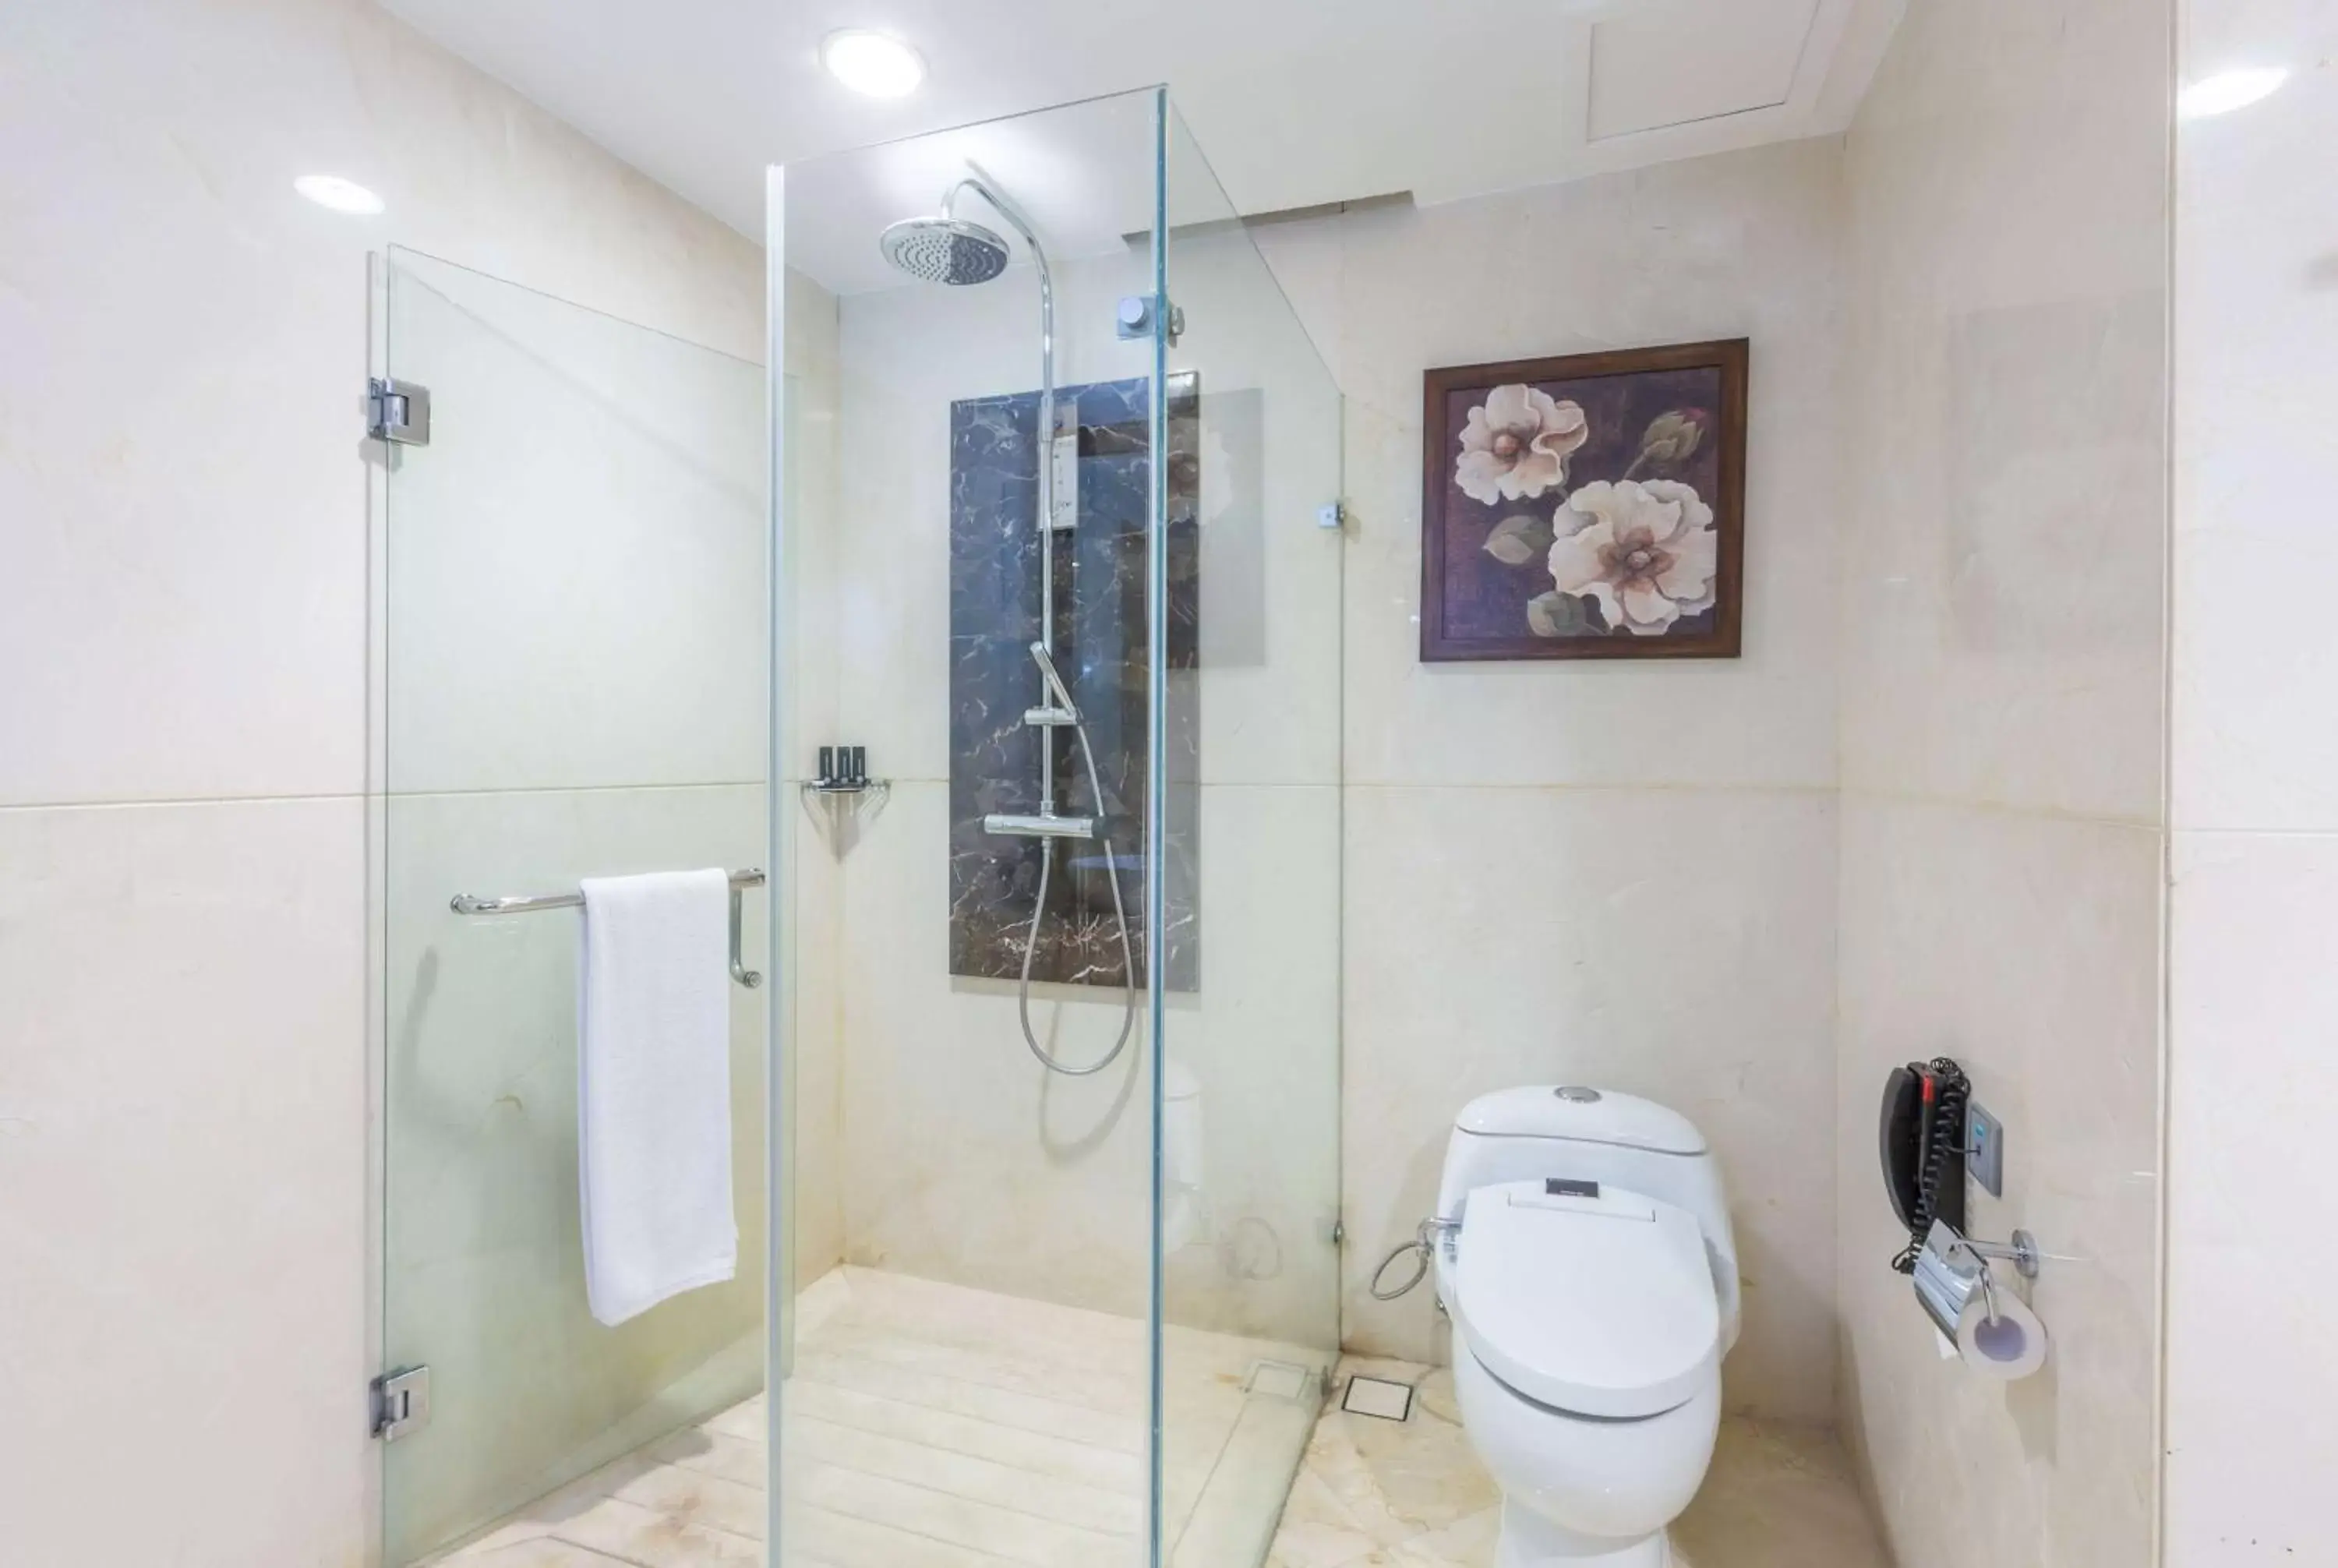 Photo of the whole room, Bathroom in Wyndham Surabaya